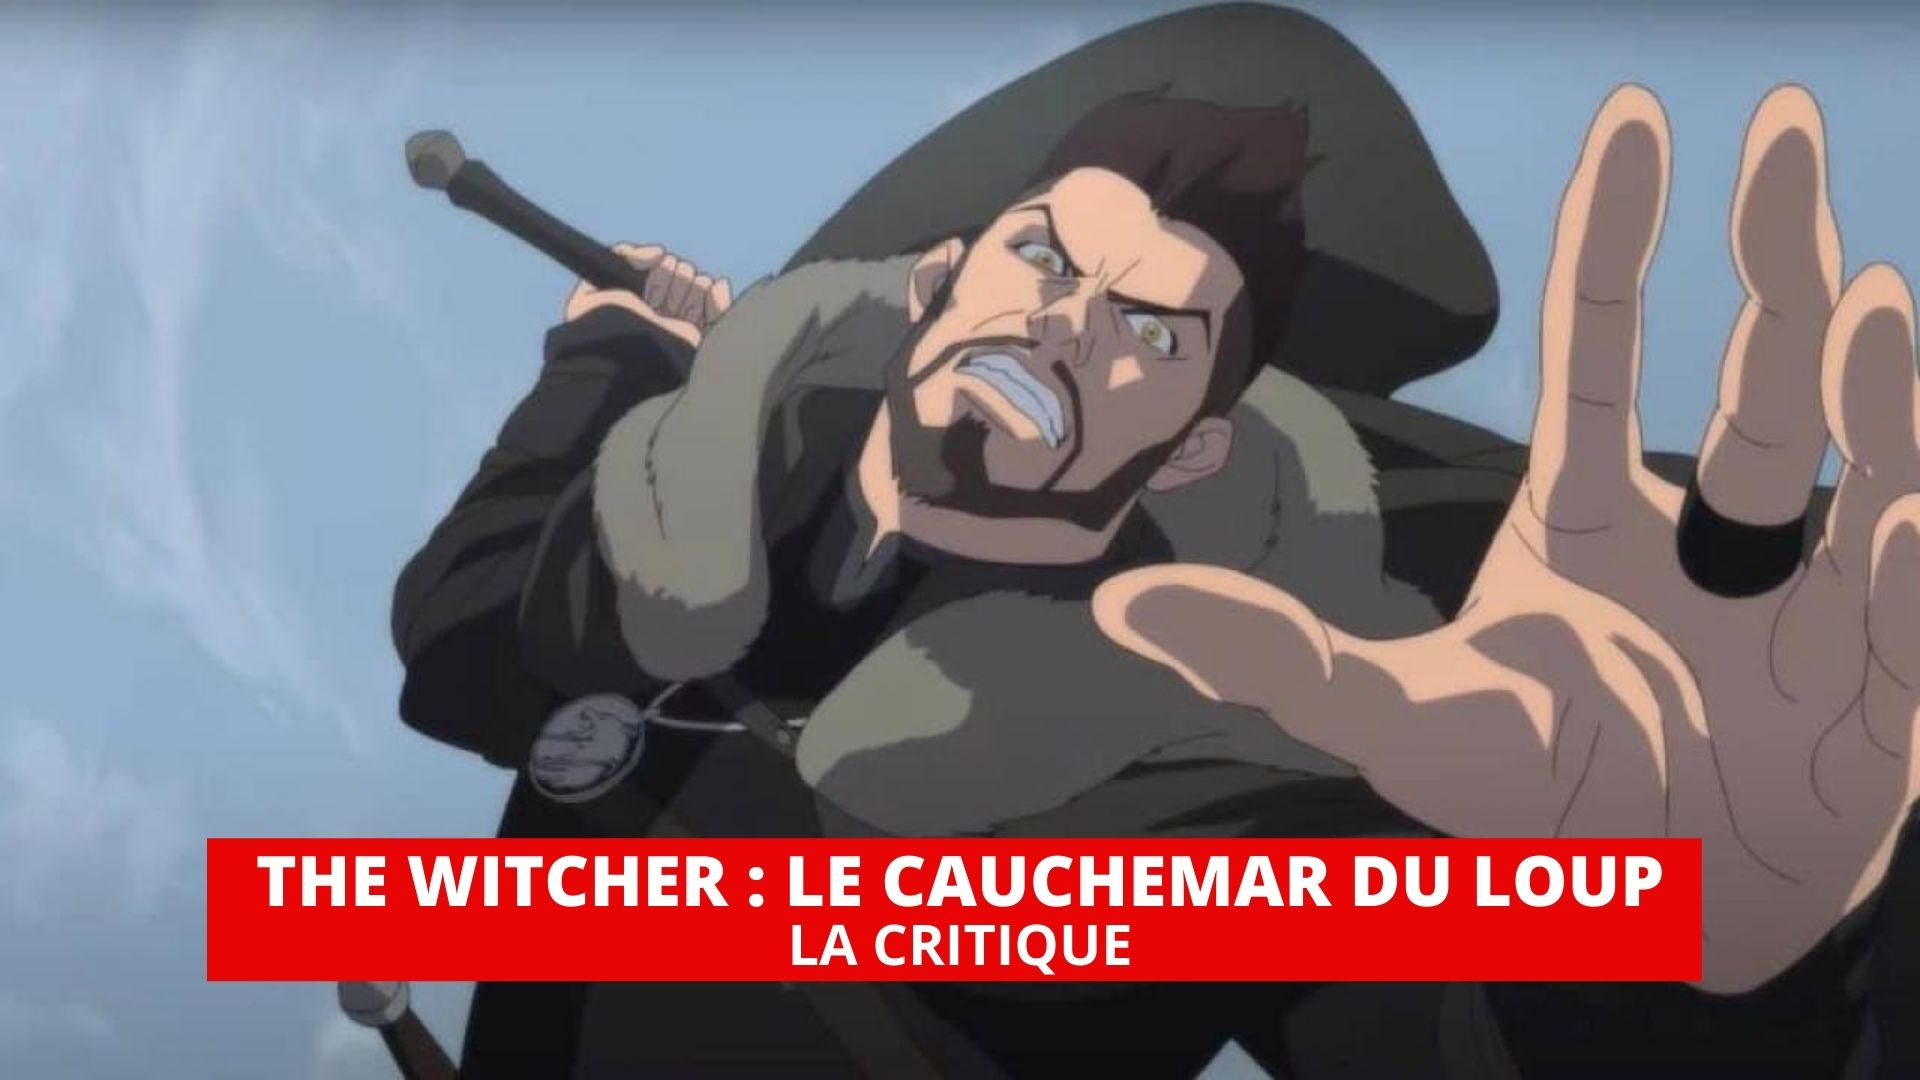 The Witcher le cauchemar du loup : Destiny is back